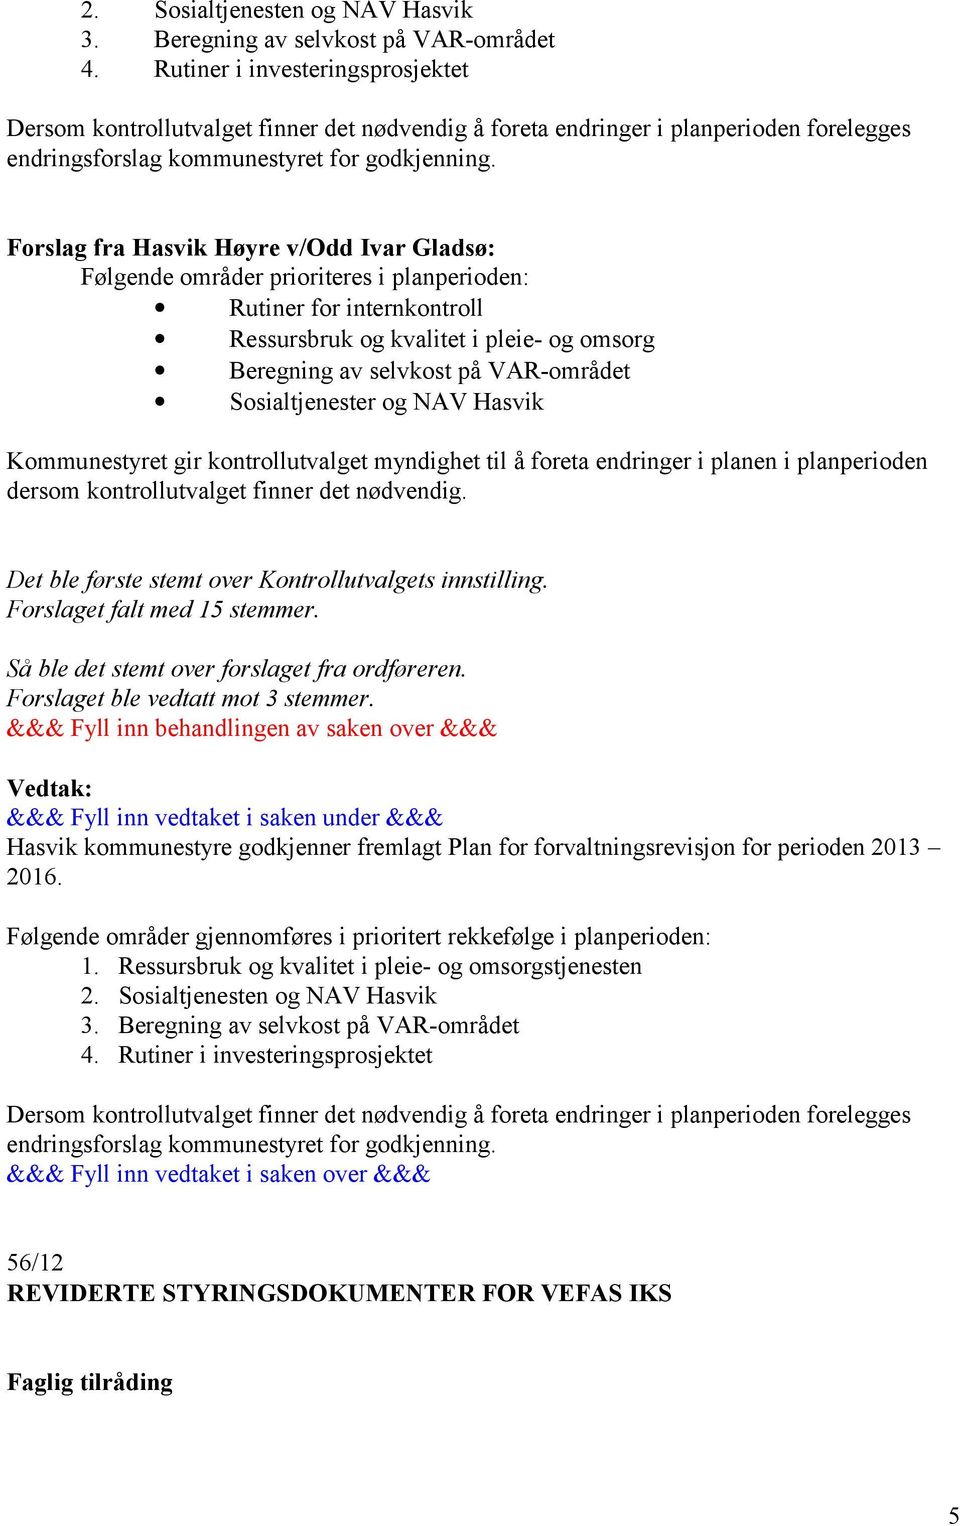 Forslag fra Hasvik Høyre v/odd Ivar Gladsø: Følgende områder prioriteres i planperioden: Rutiner for internkontroll Ressursbruk og kvalitet i pleie- og omsorg Beregning av selvkost på VAR-området